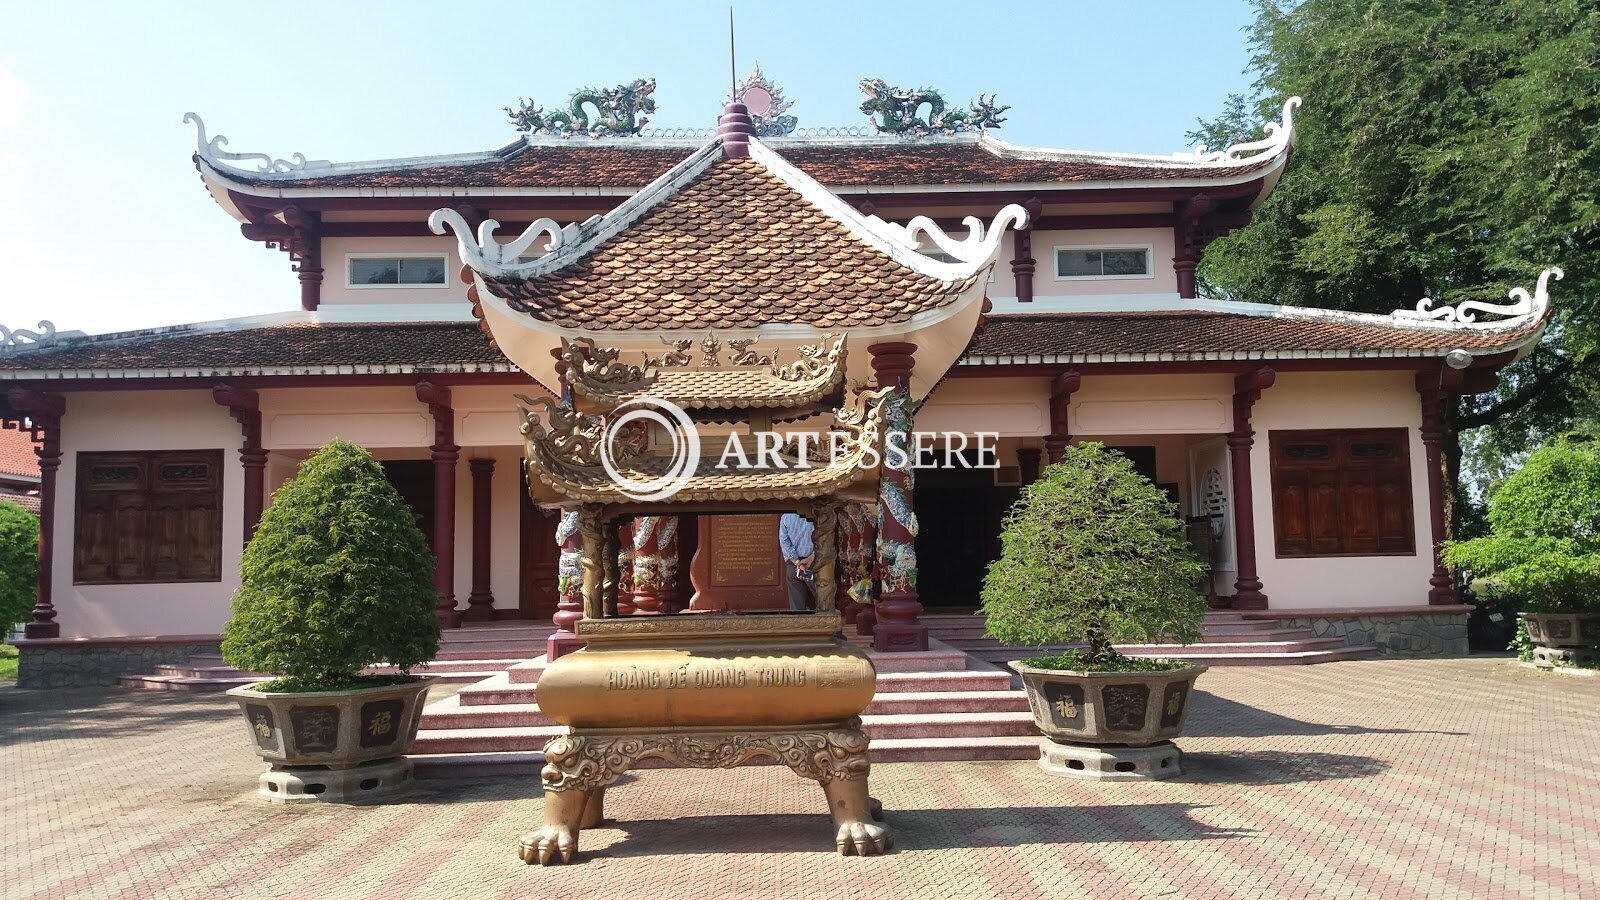 Quang Trung Museum